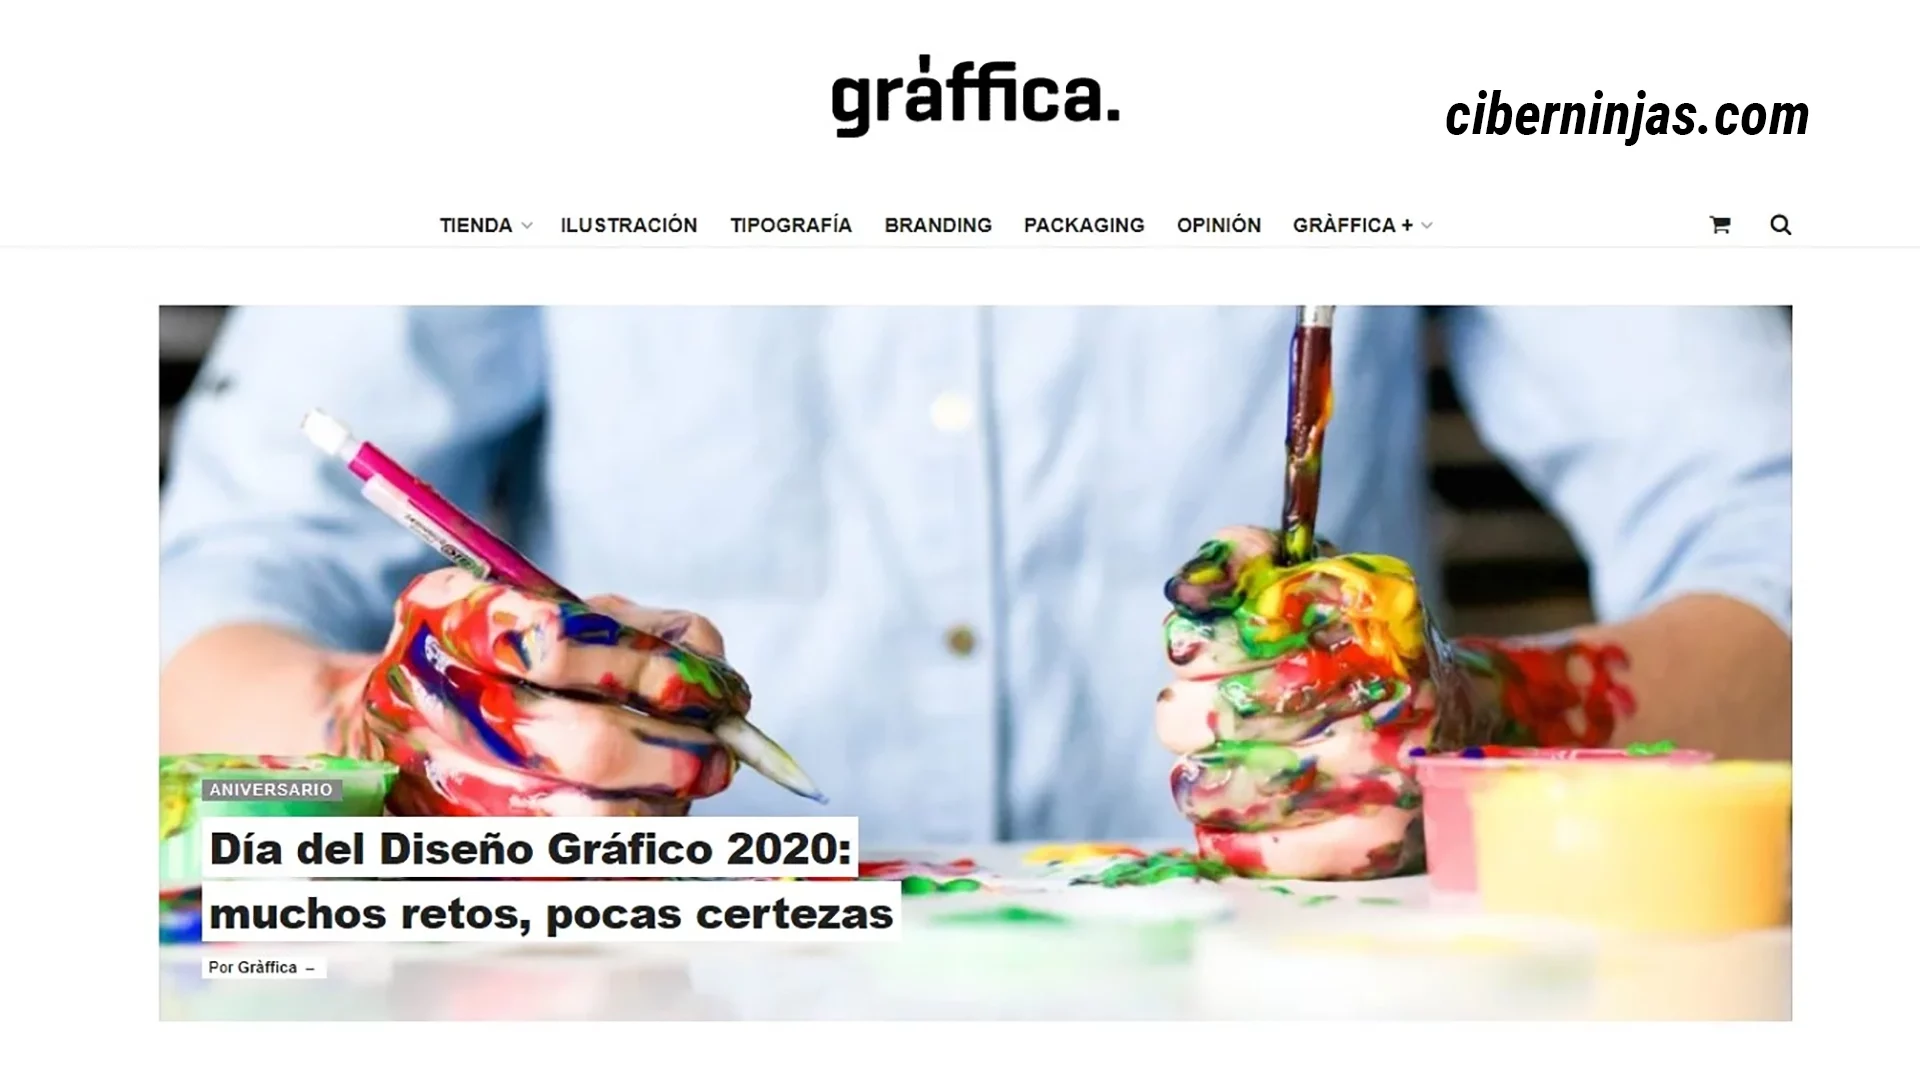 Graffica: Uno de los mejores blogs de diseño en español